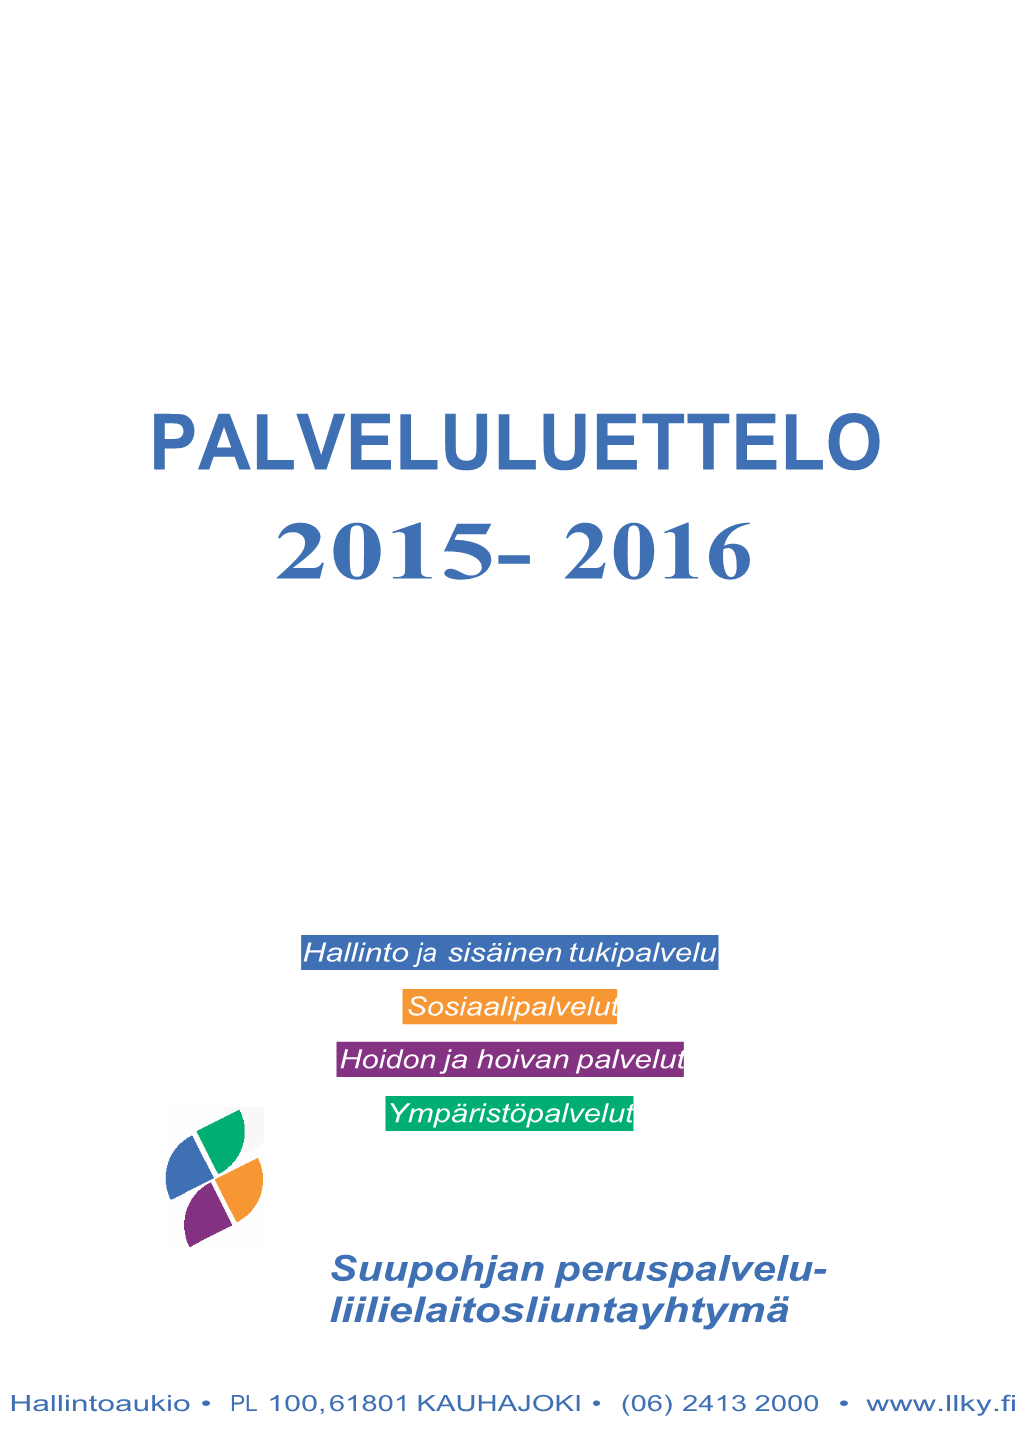 Palveluluettelo 2015- 2016